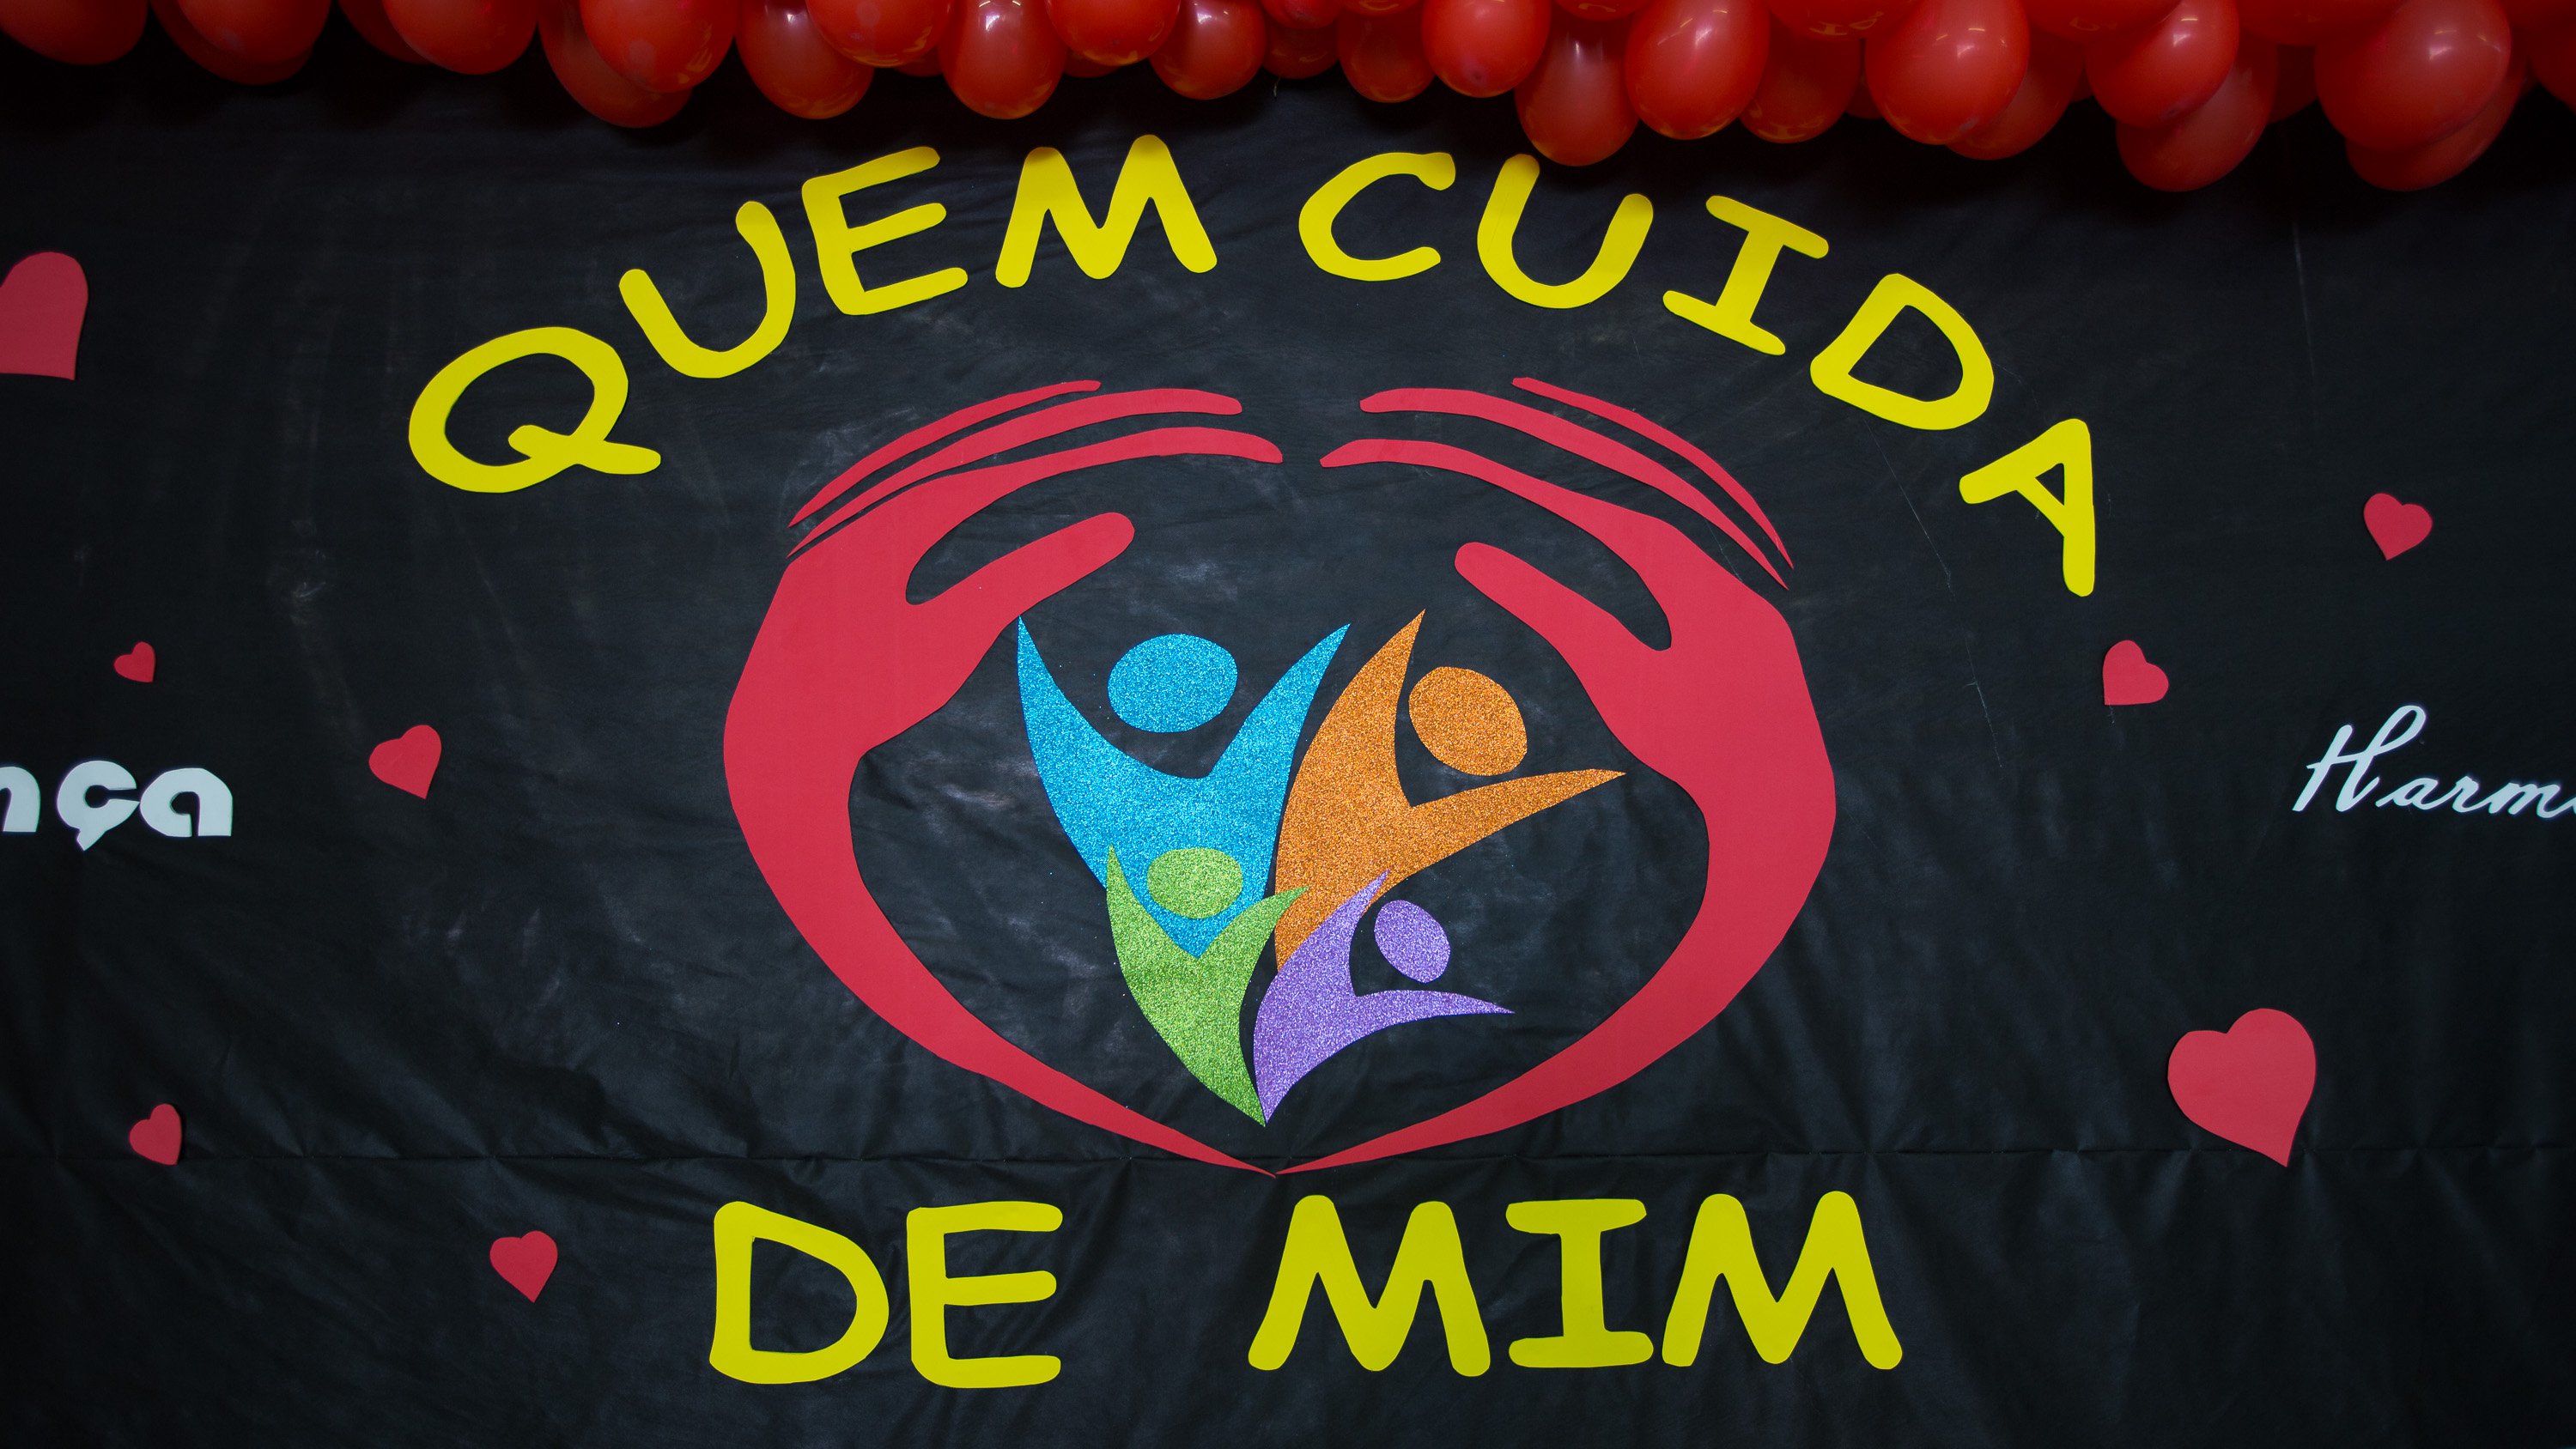 Um cartaz escolar colorido exibe os dizeres "Quem cuida de mim"